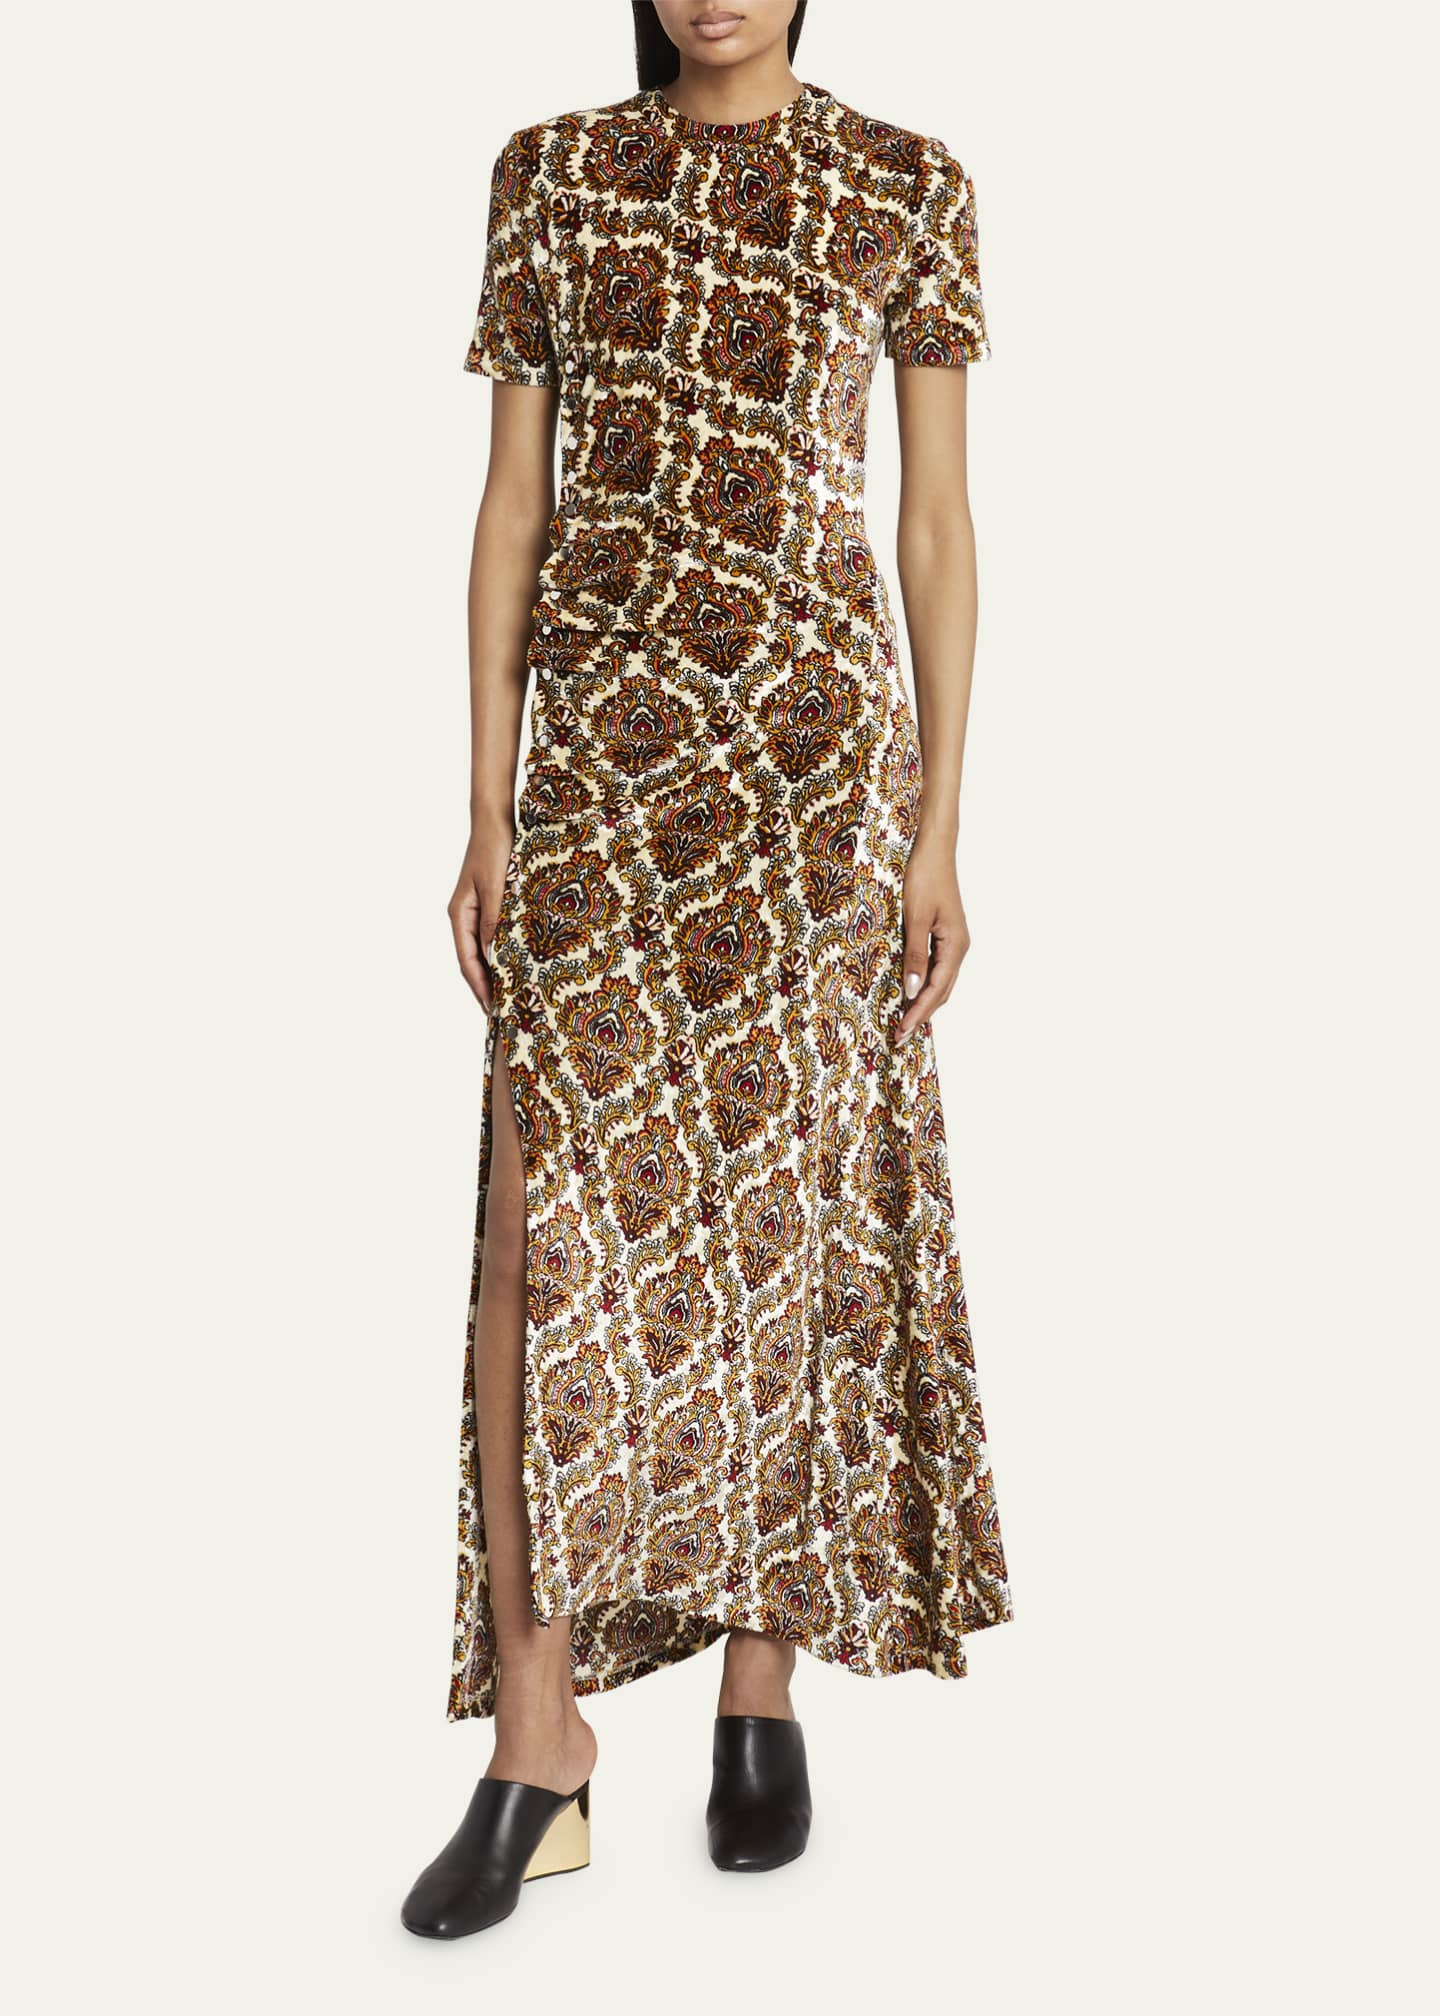 Rabanne Damask Print Velvet Buttoned Ruched Waist Dress - Bergdorf Goodman